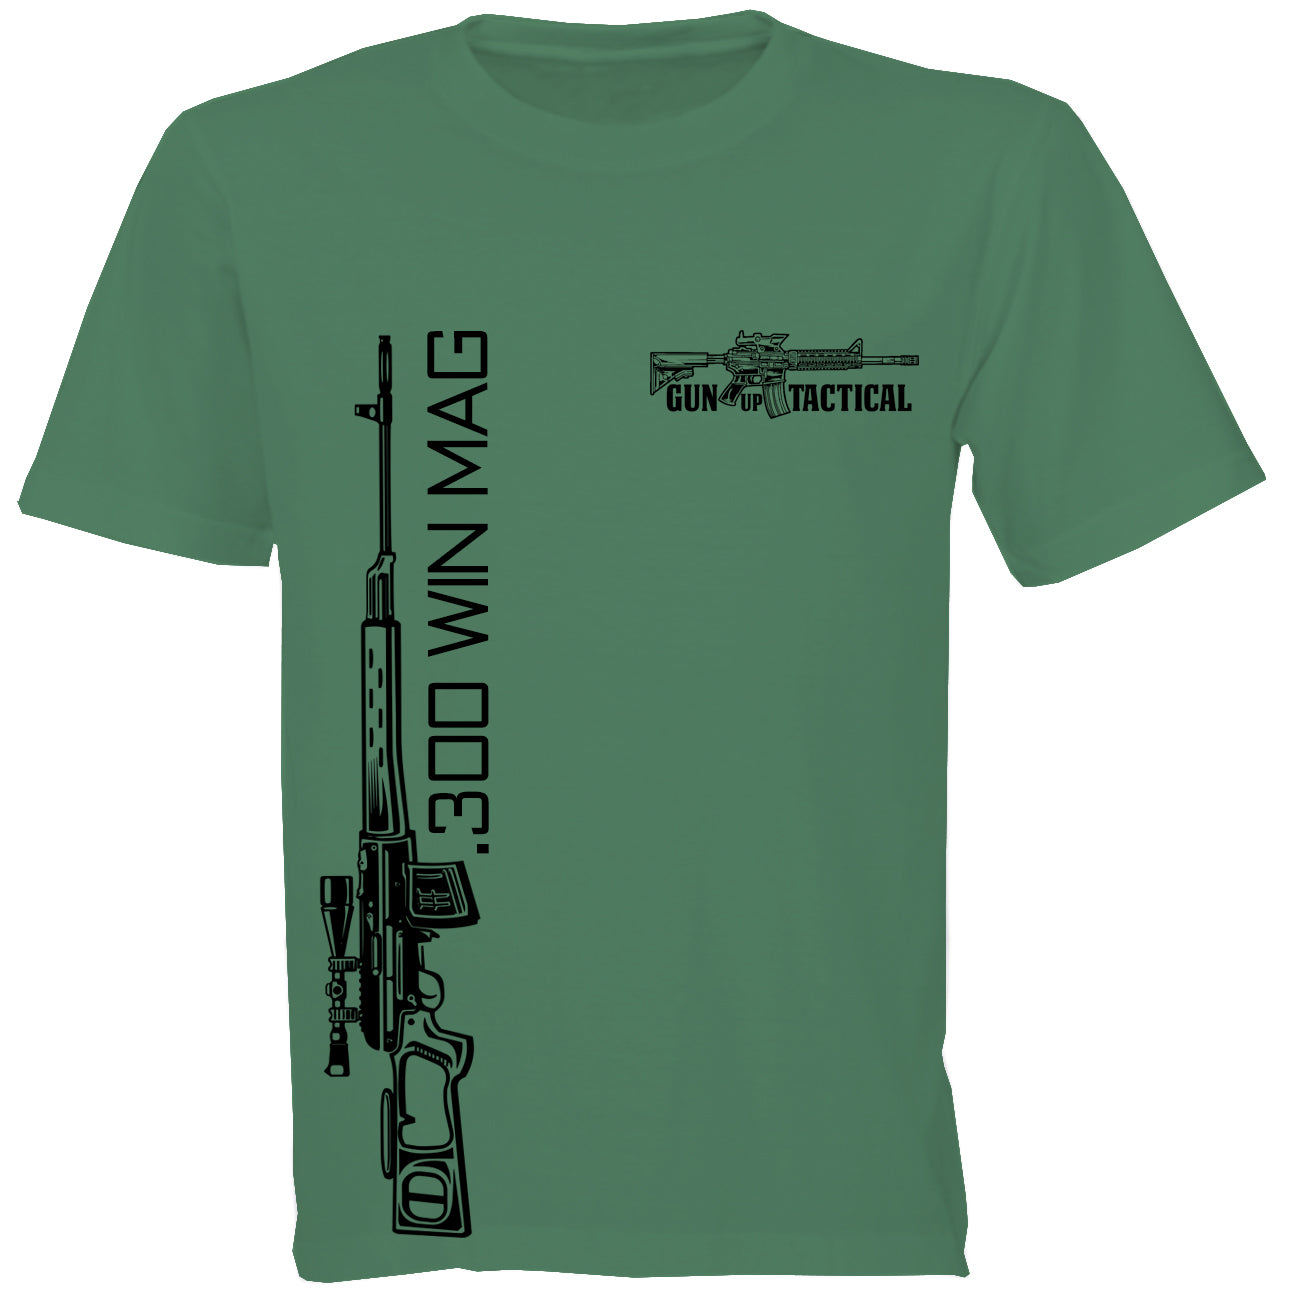 300 Win Mag T-Shirt - Gun Up Tactical